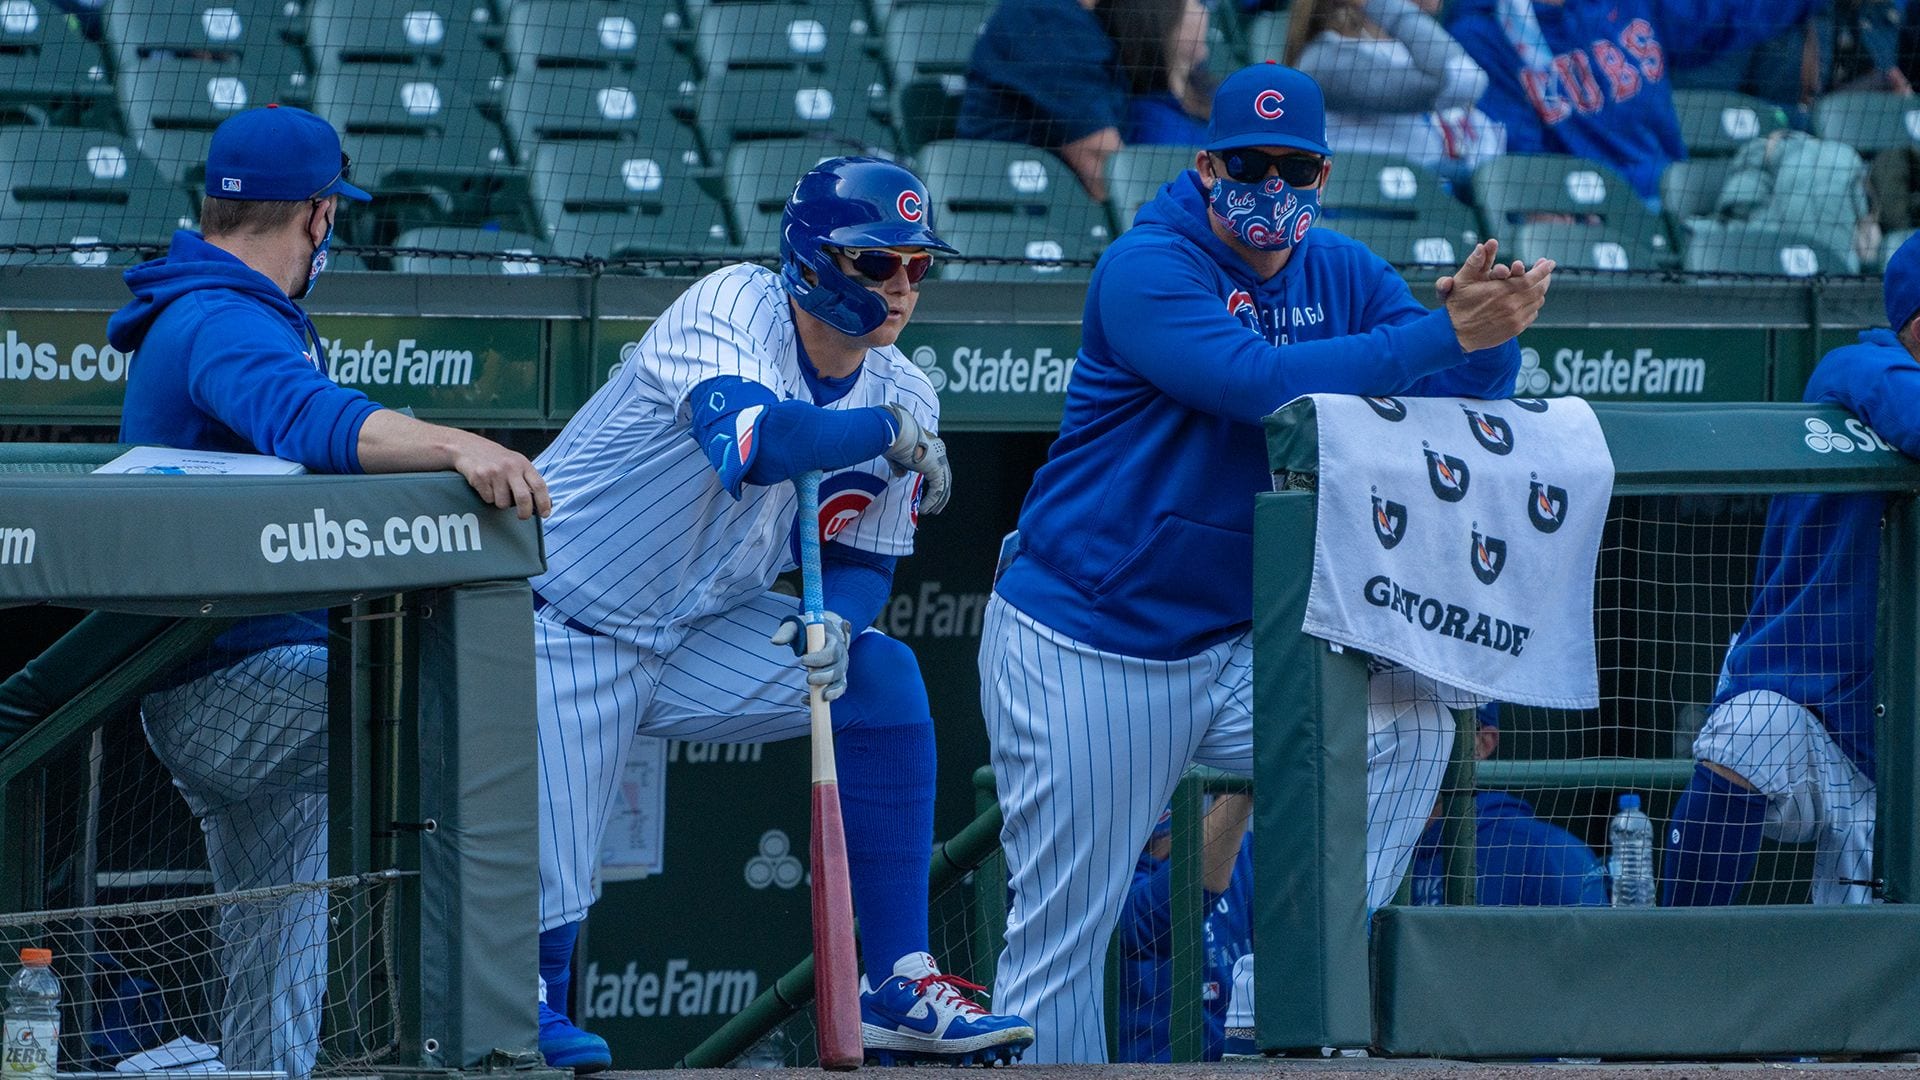 Cubs-Braves Joc Pederson deal: Cubs might regret it - Chicago Sun